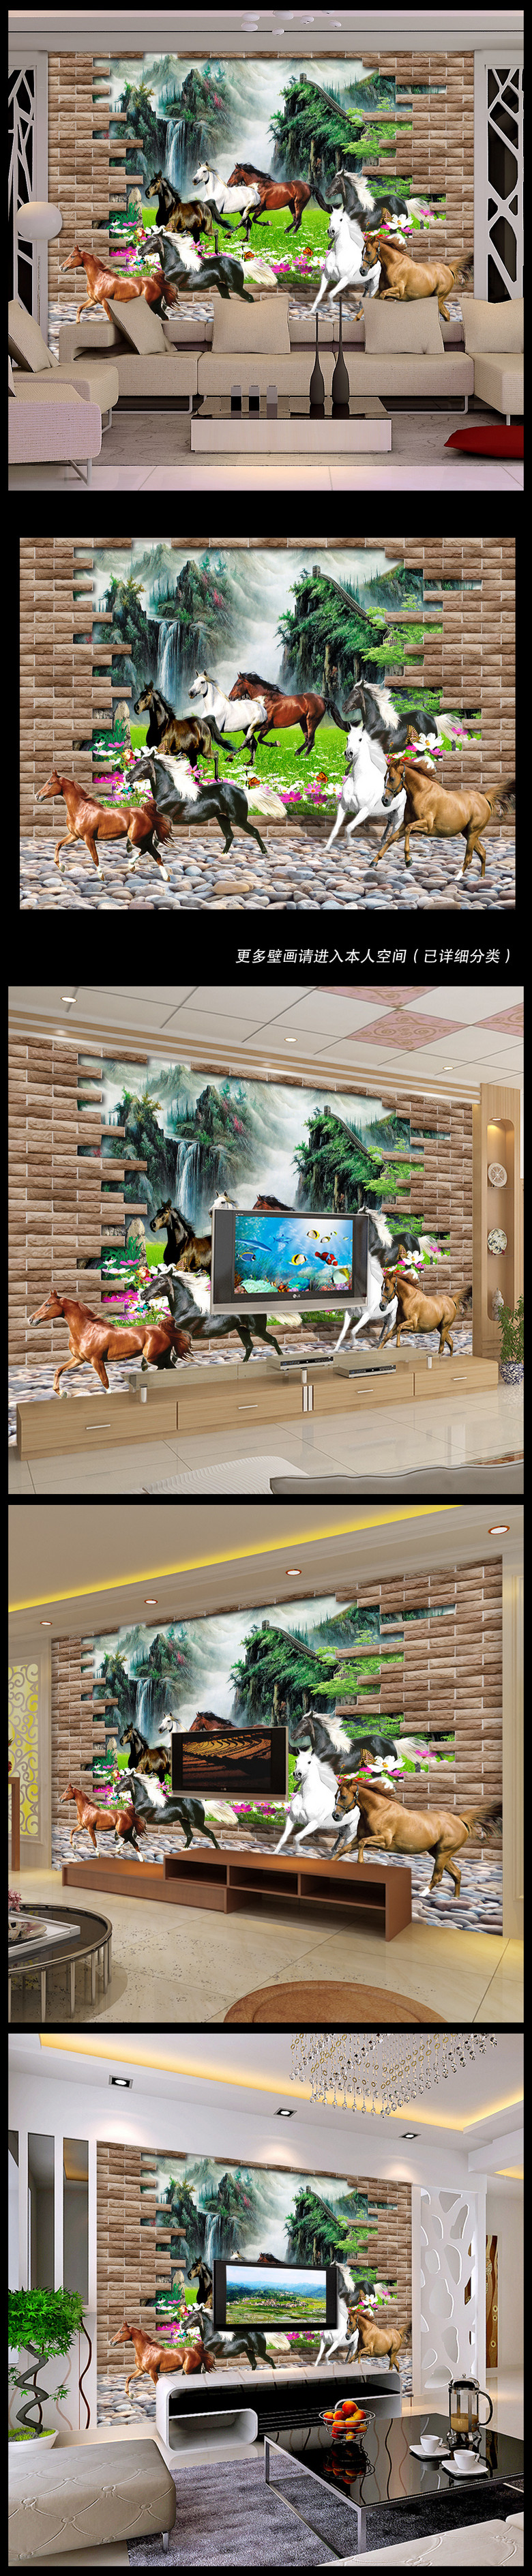 原创3d立体山水画电视背景墙壁纸壁画电视墙版权可商用